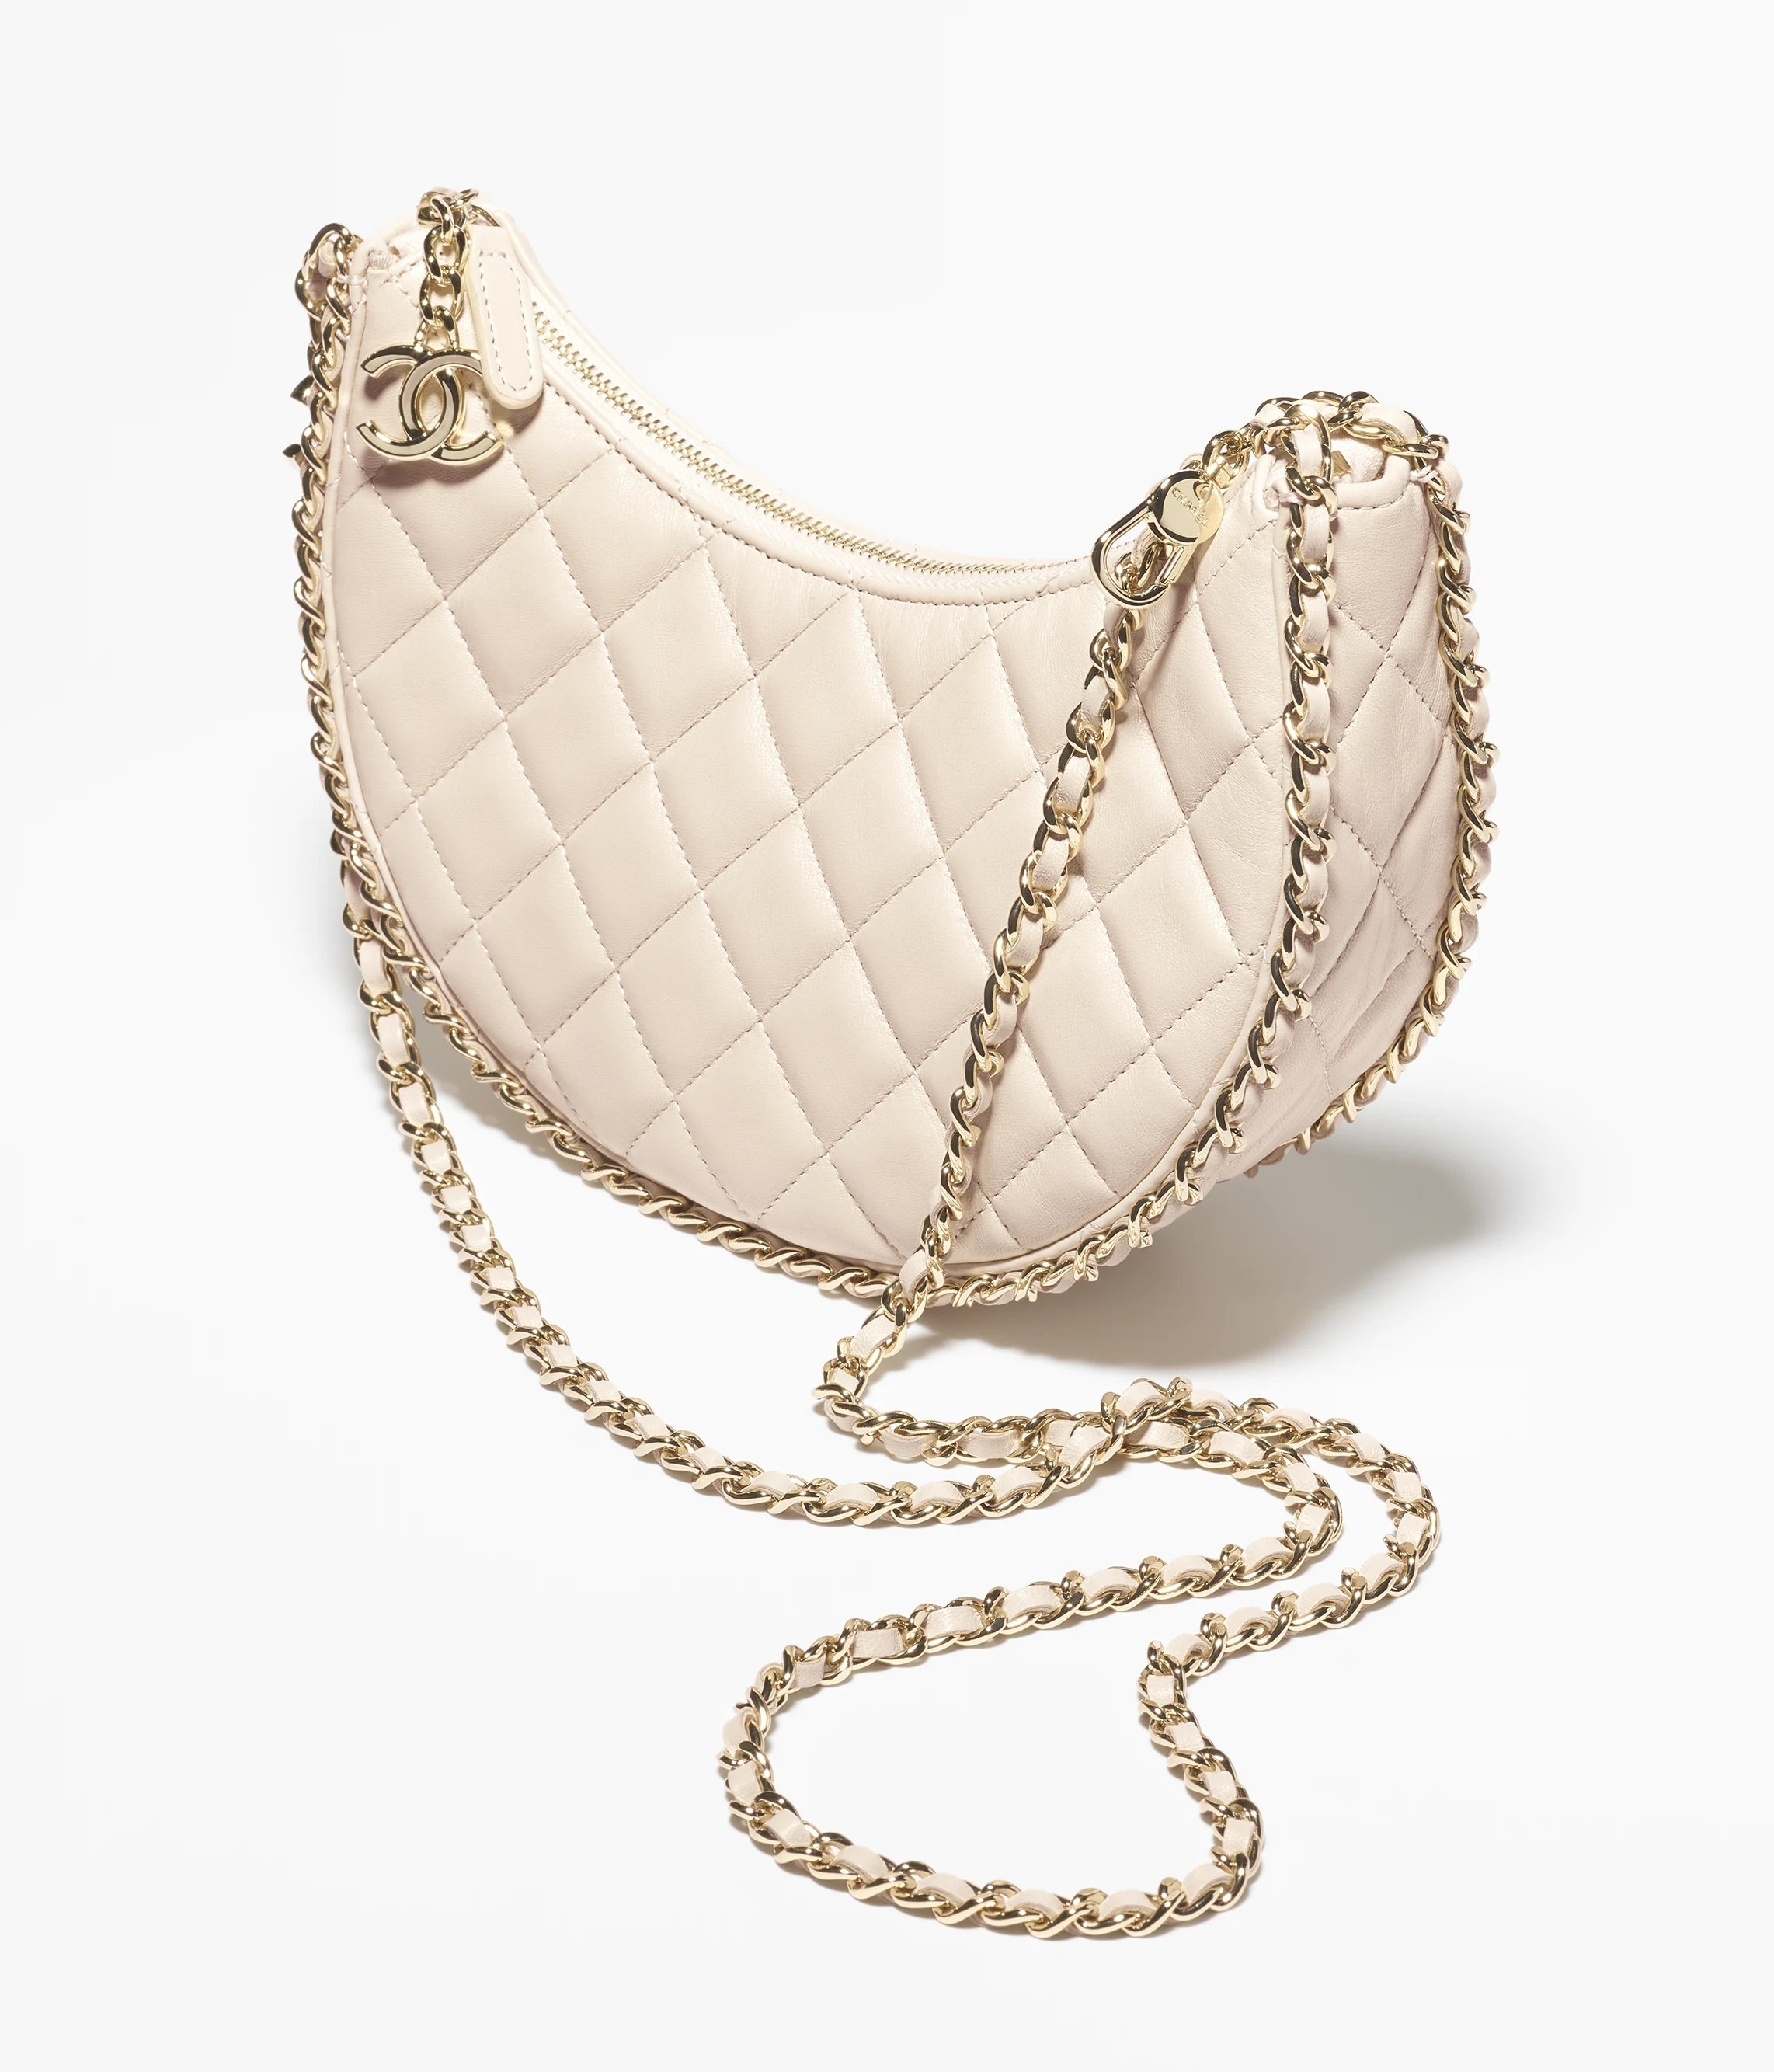 Chanel Small Hobo Bag